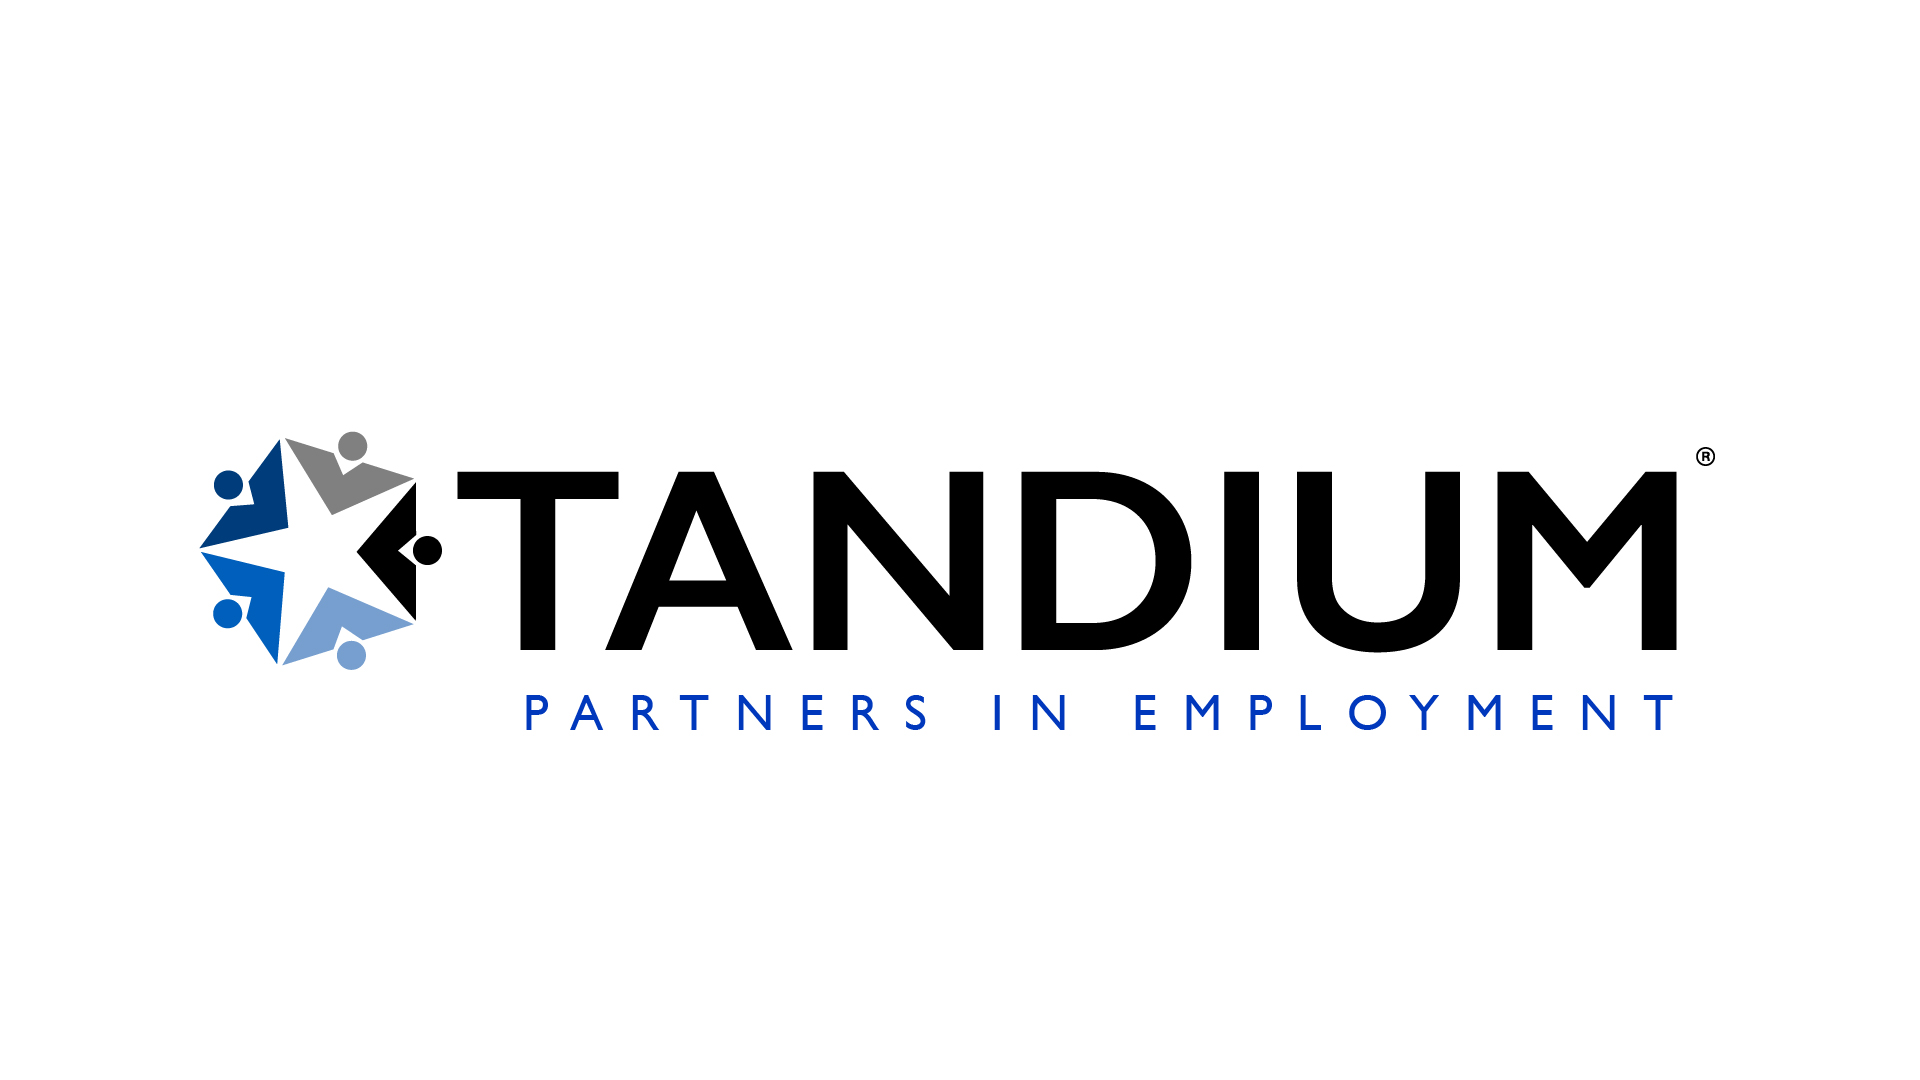 Tandium Corporation